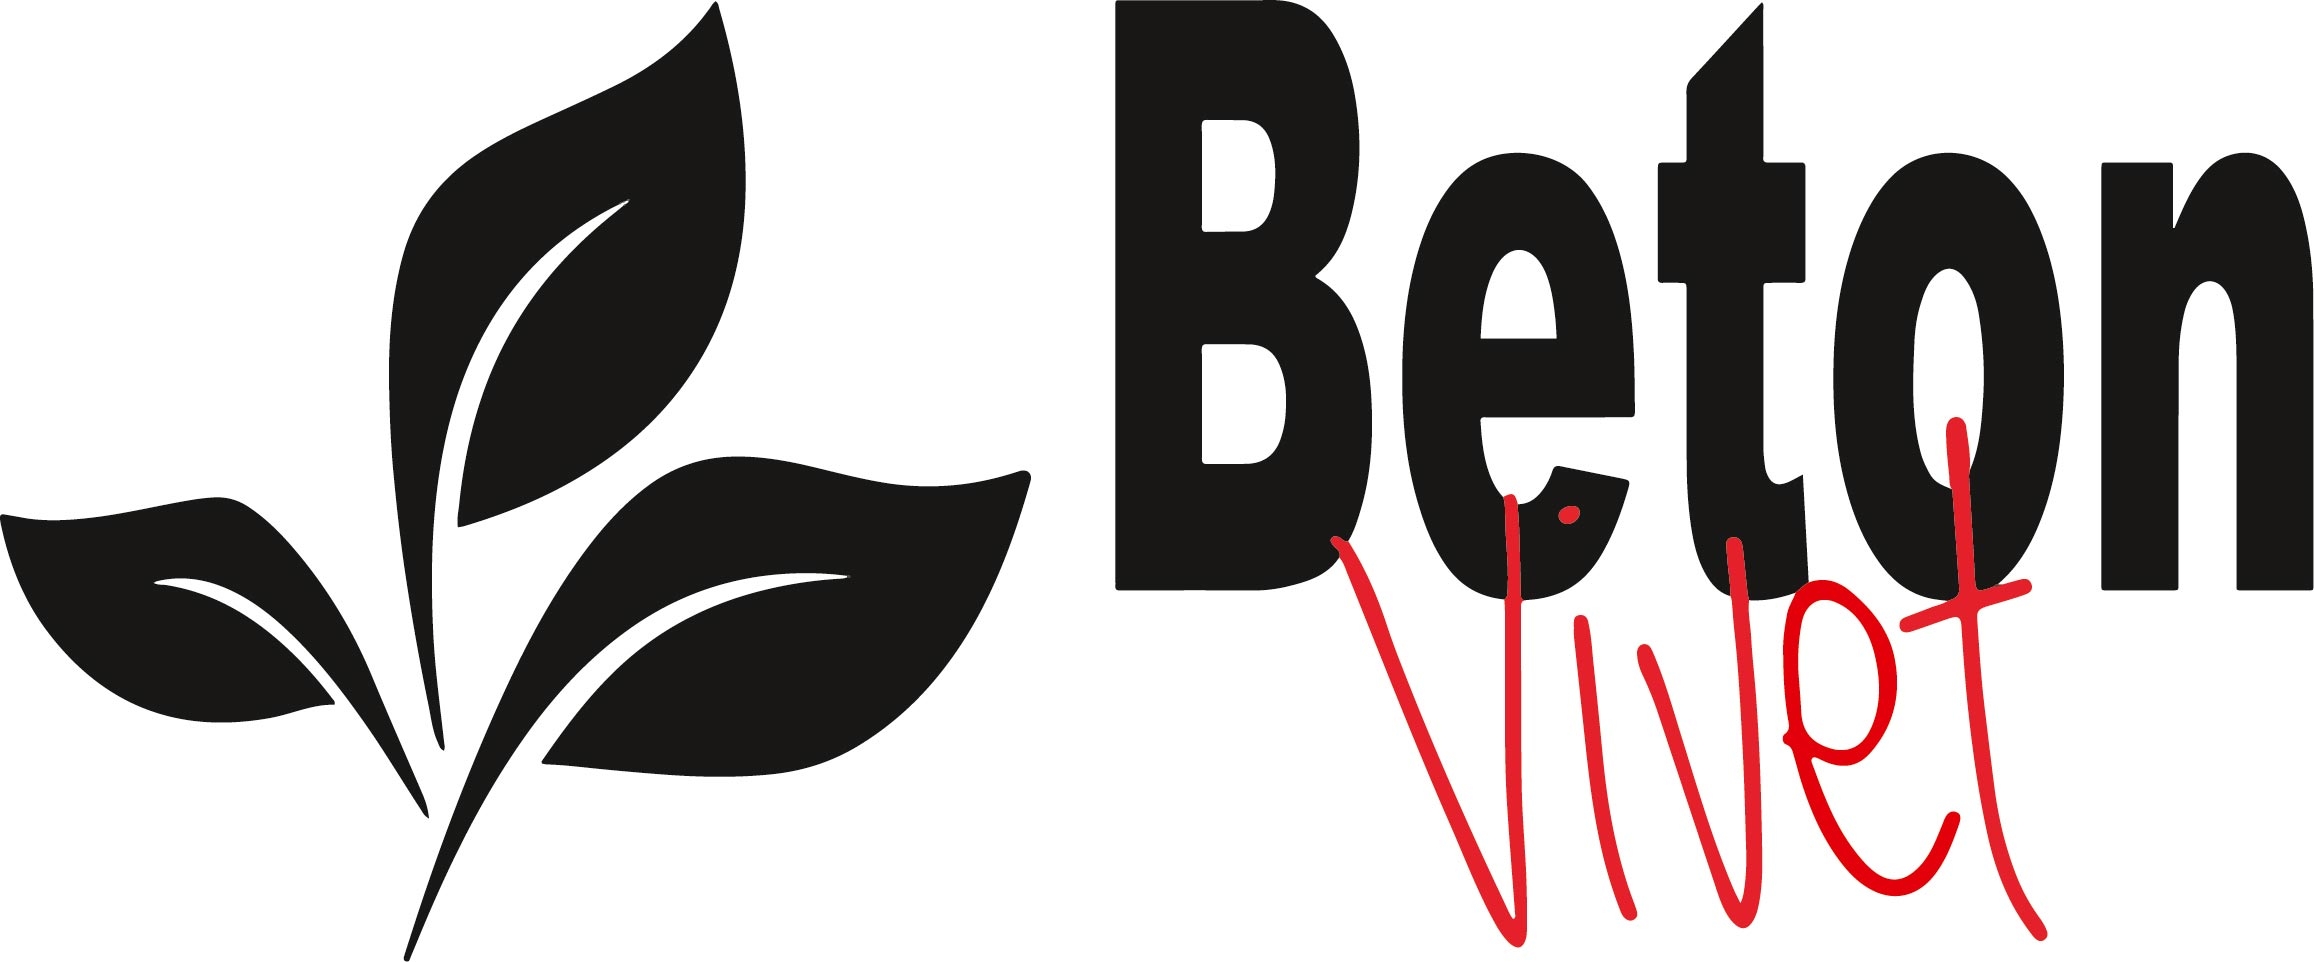 BetonVivet-Logo